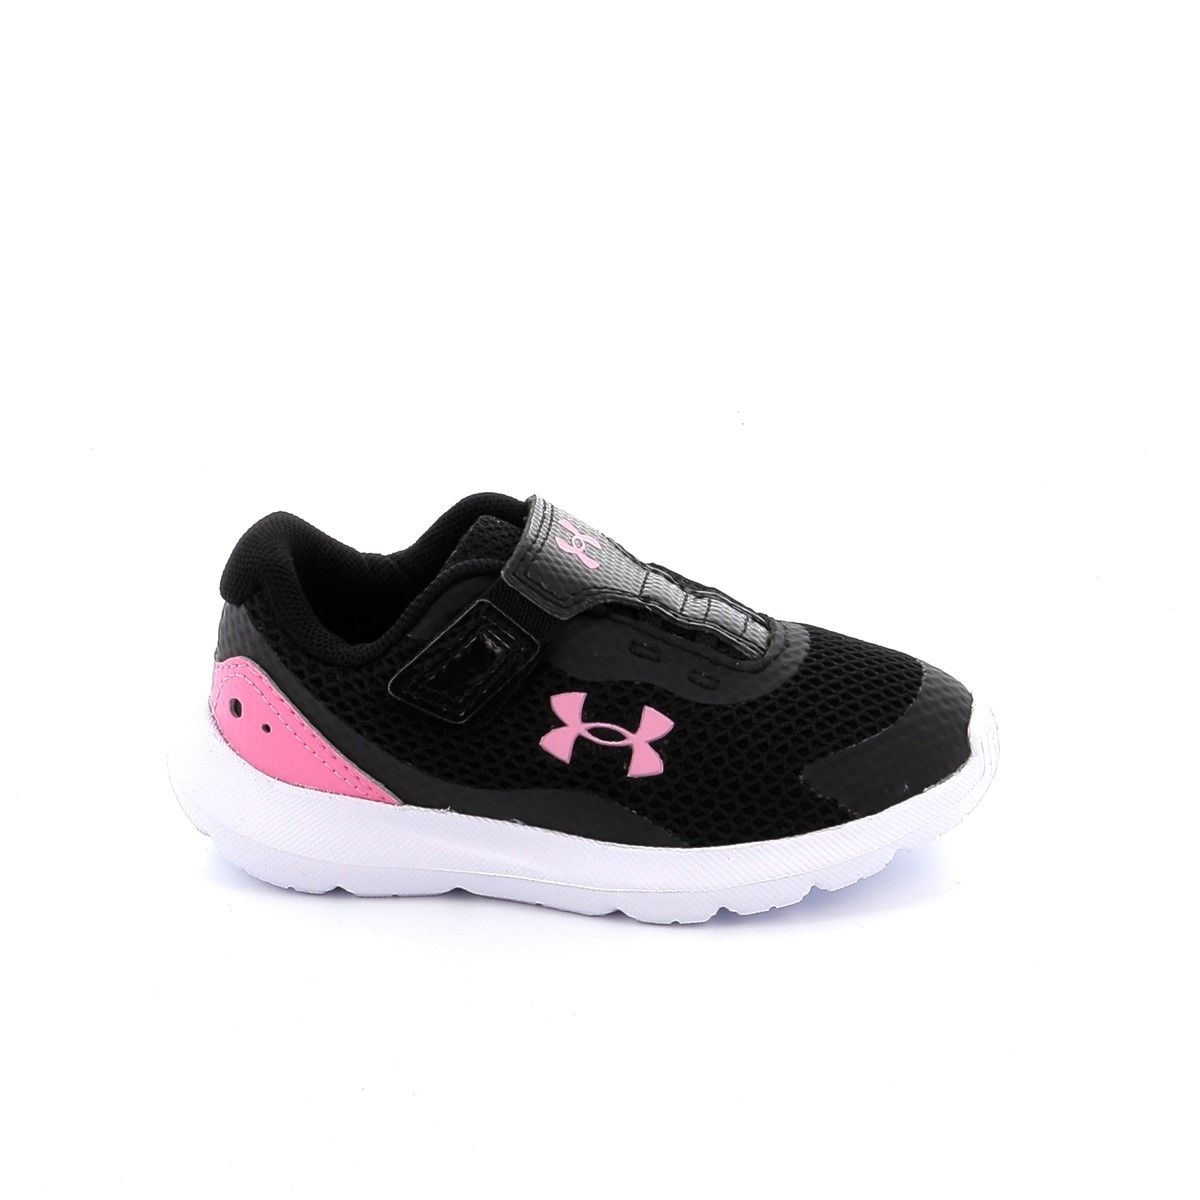 Παιδικό Αθλητικό Παπούτσι για Κορίτσι Under Harmour Uaginf Surge 3 Χρώματος Μαύρο 3025015-001